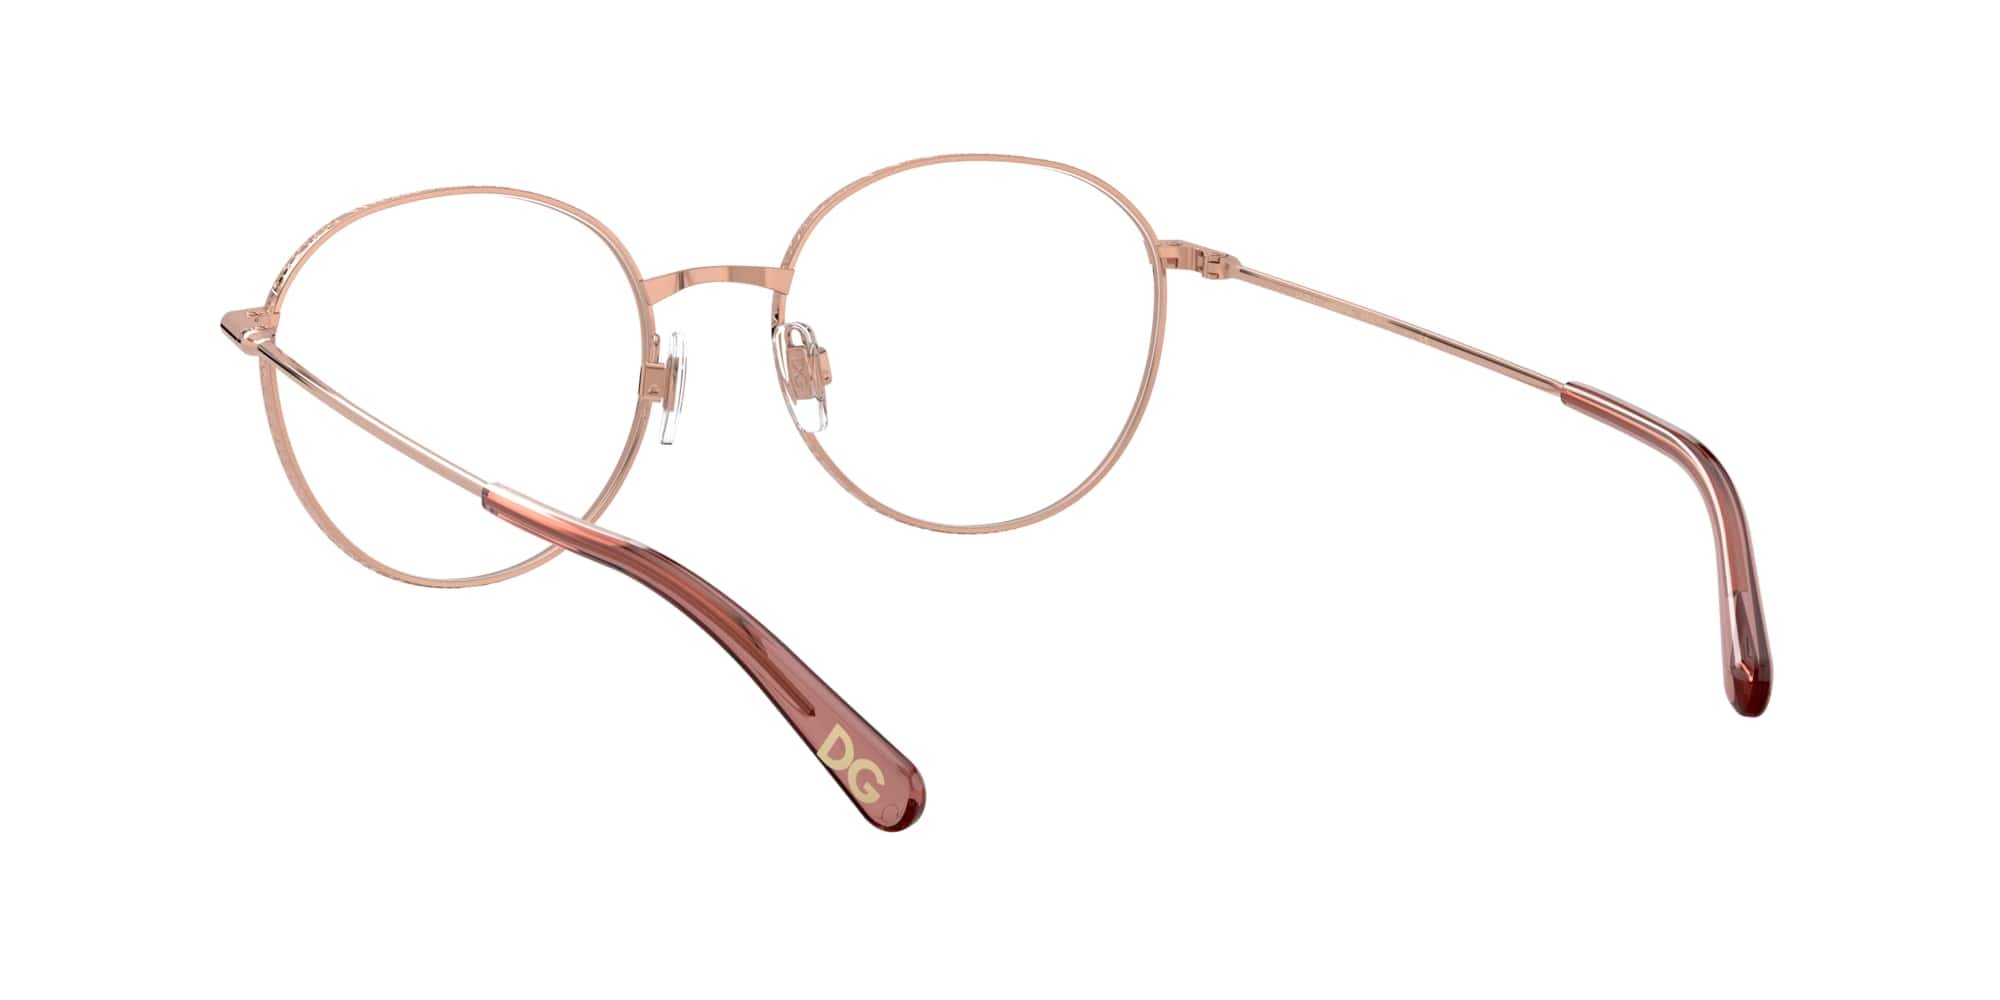 Das Bild zeigt die Korrektionsbrille DG1322 1298 von der Marke D&G in rosegold.